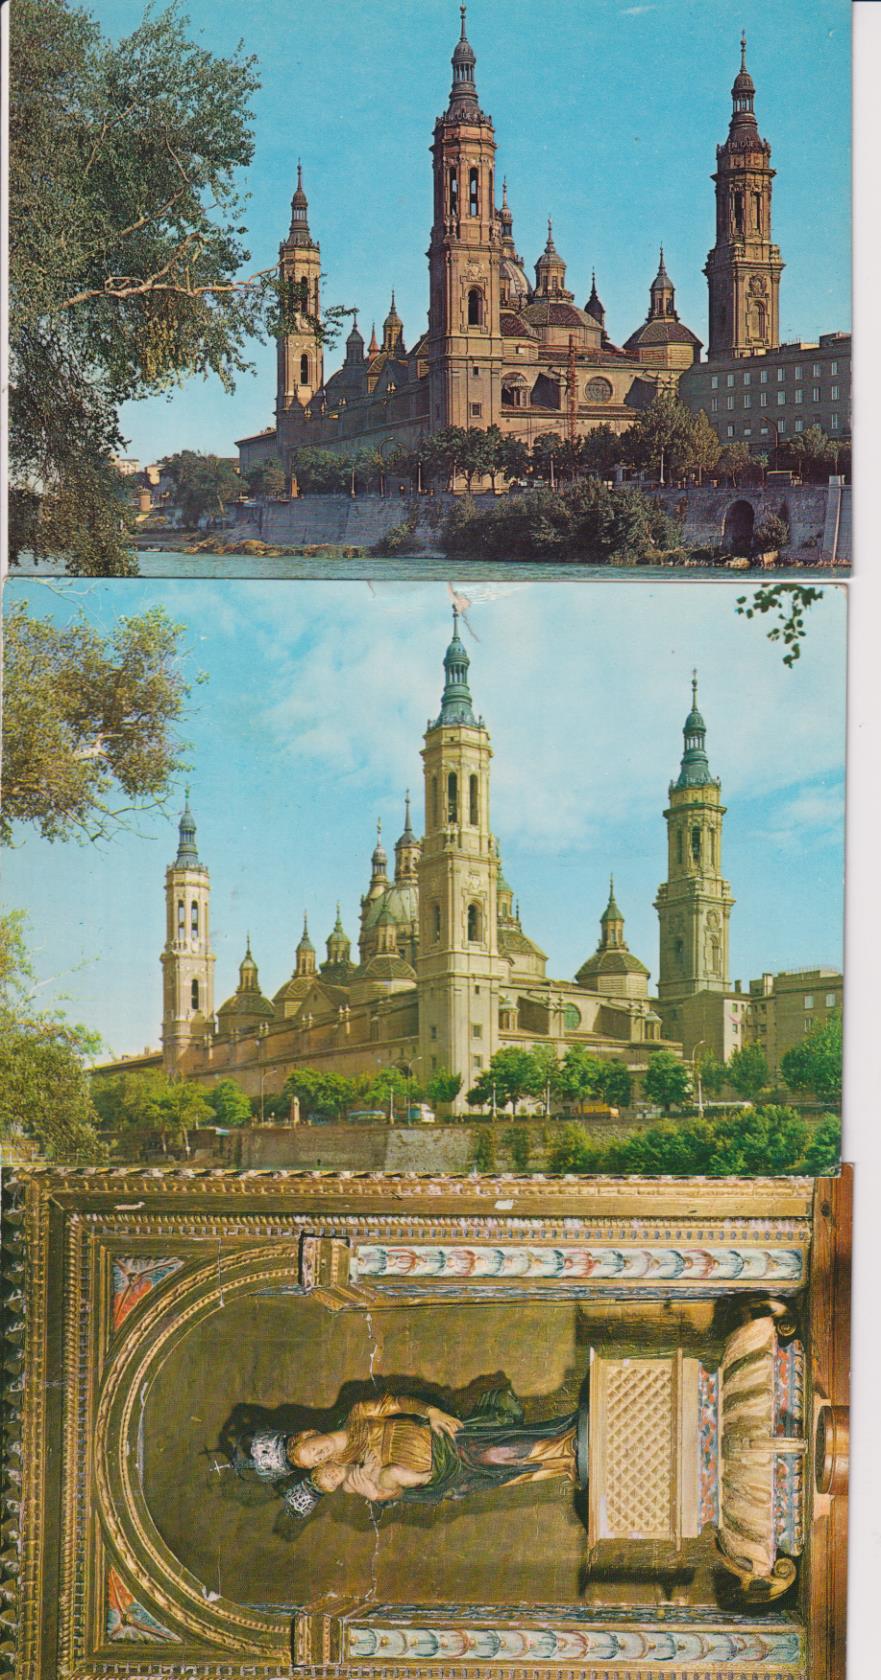 Lote de 3 Postales: El Pilar (2) y Virgen Blanca (Monasterio de Piedra)